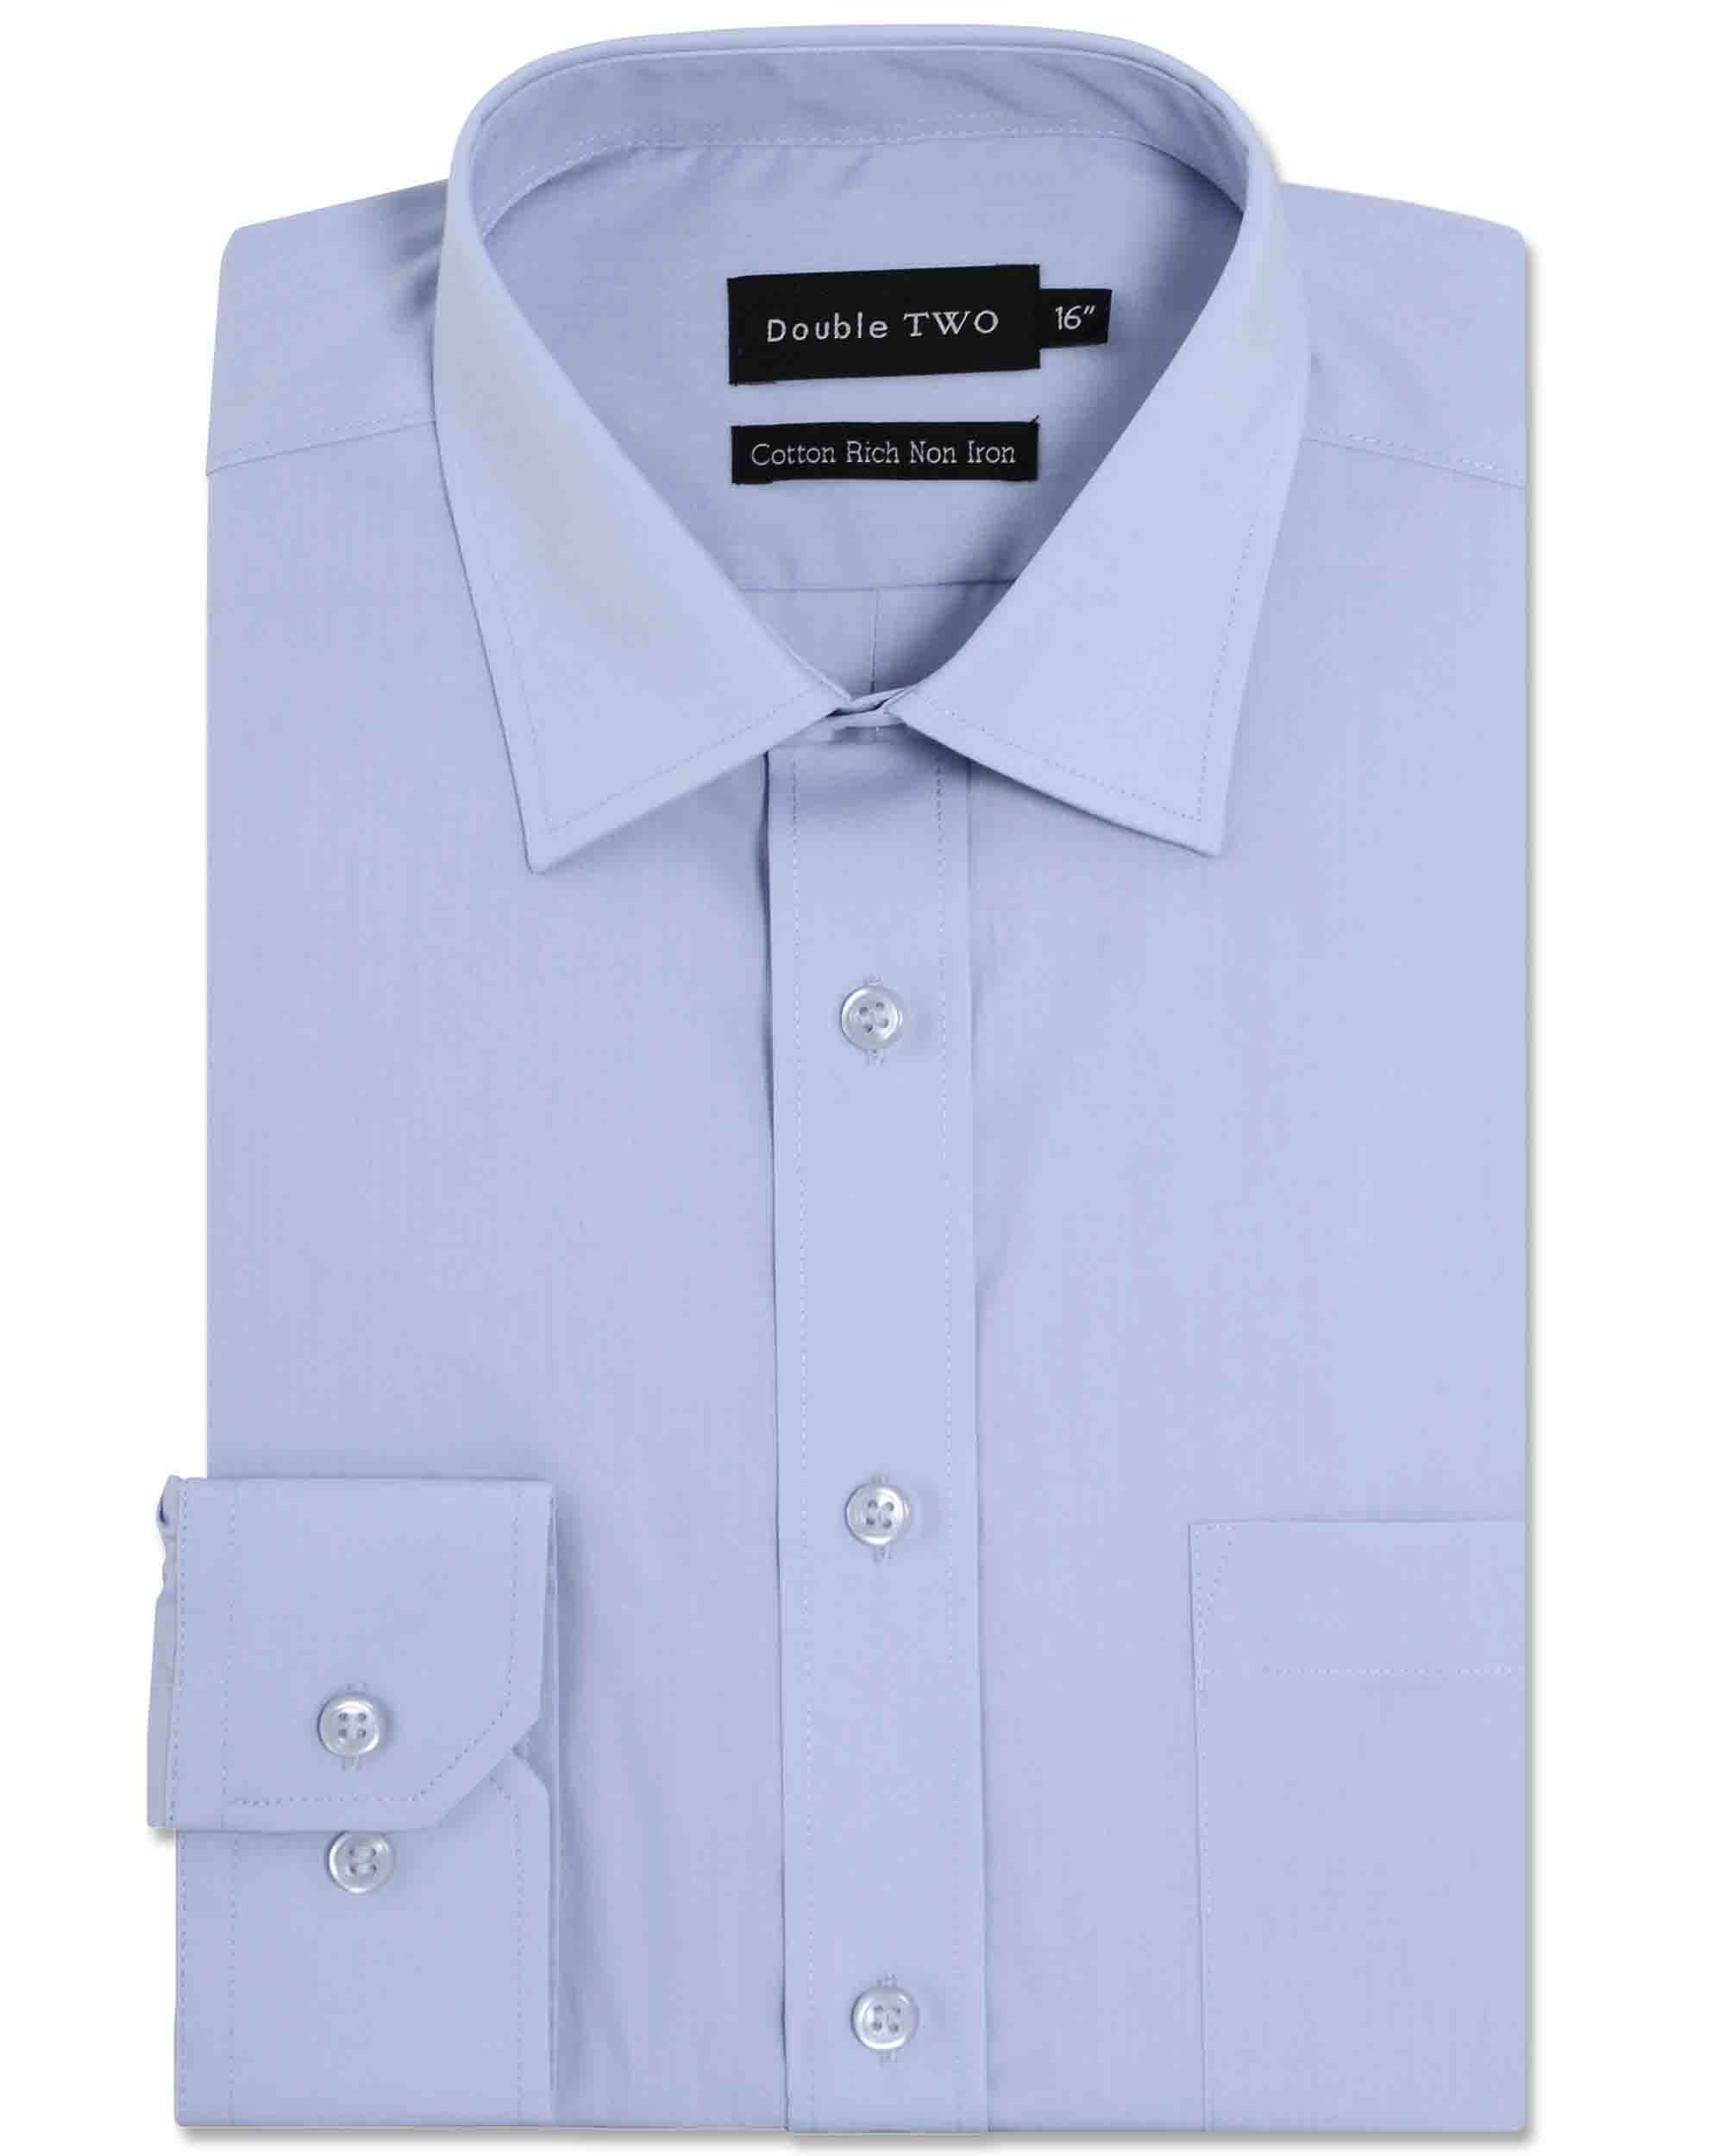 Men’s Double TWO Long Sleeve Single Cuff Poplin Shirt